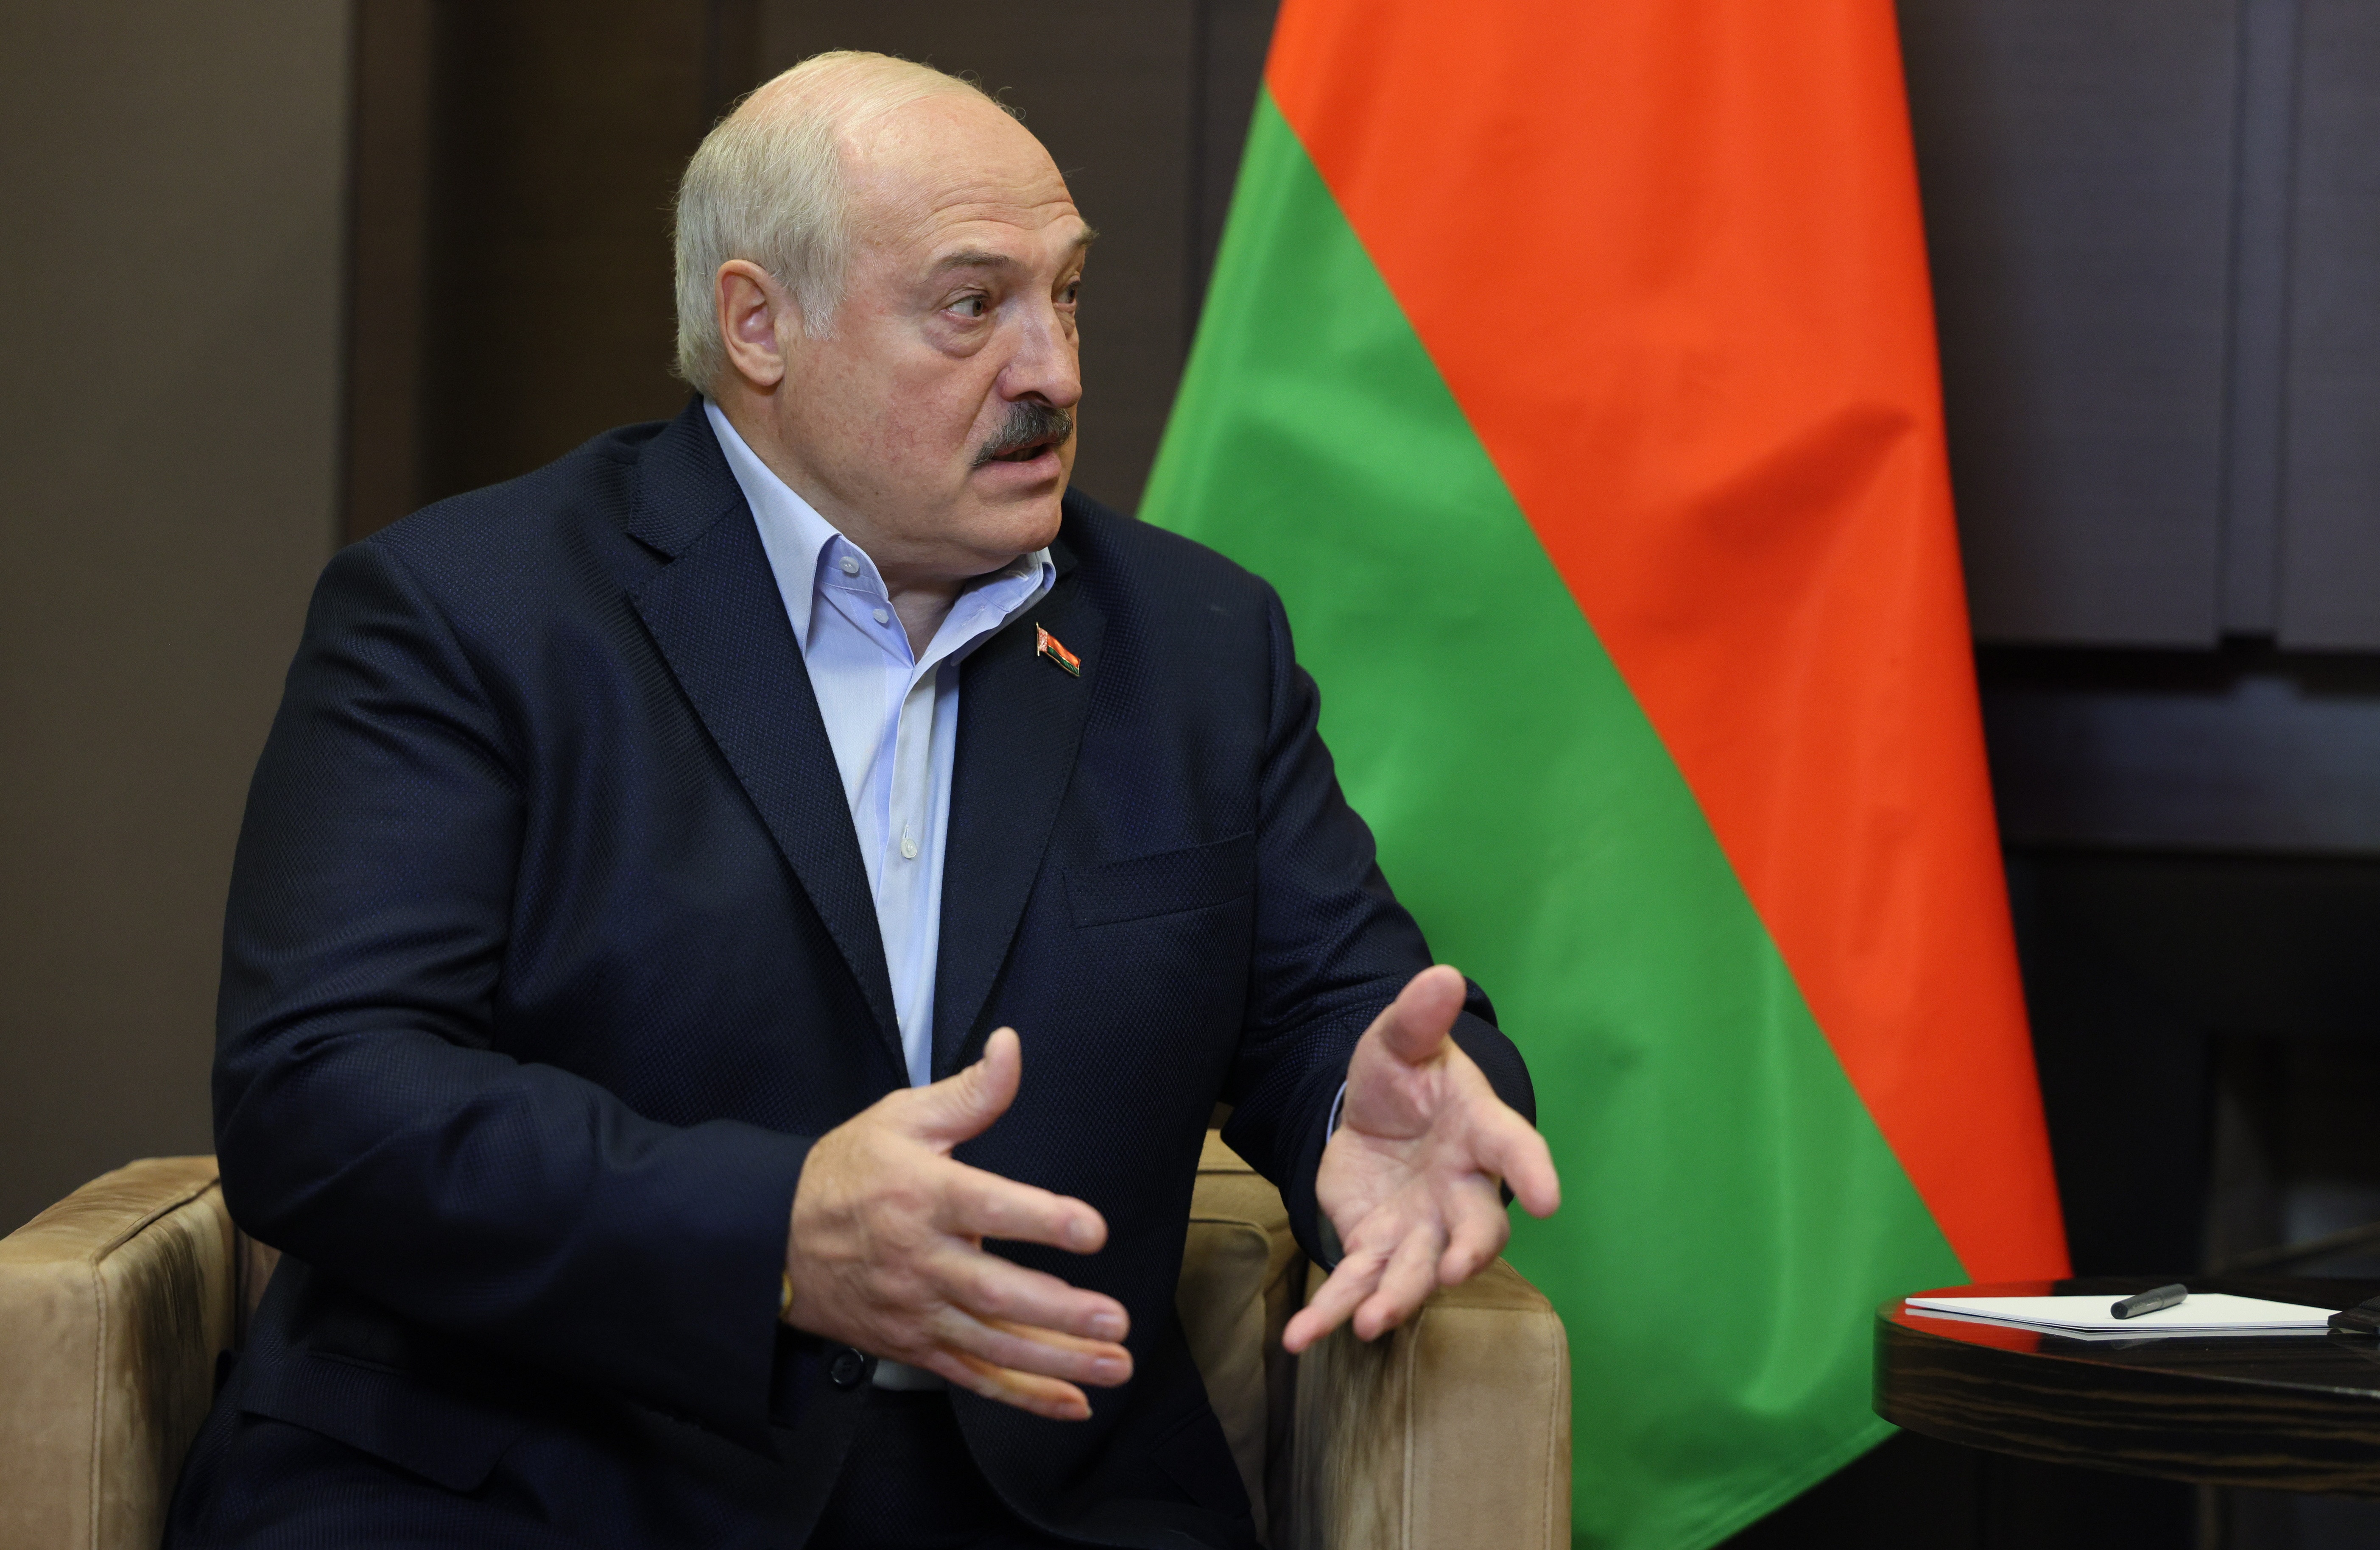 Entre insultos y amenazas: así fue la negociación entre Wagner y presidente de Bielorrusia